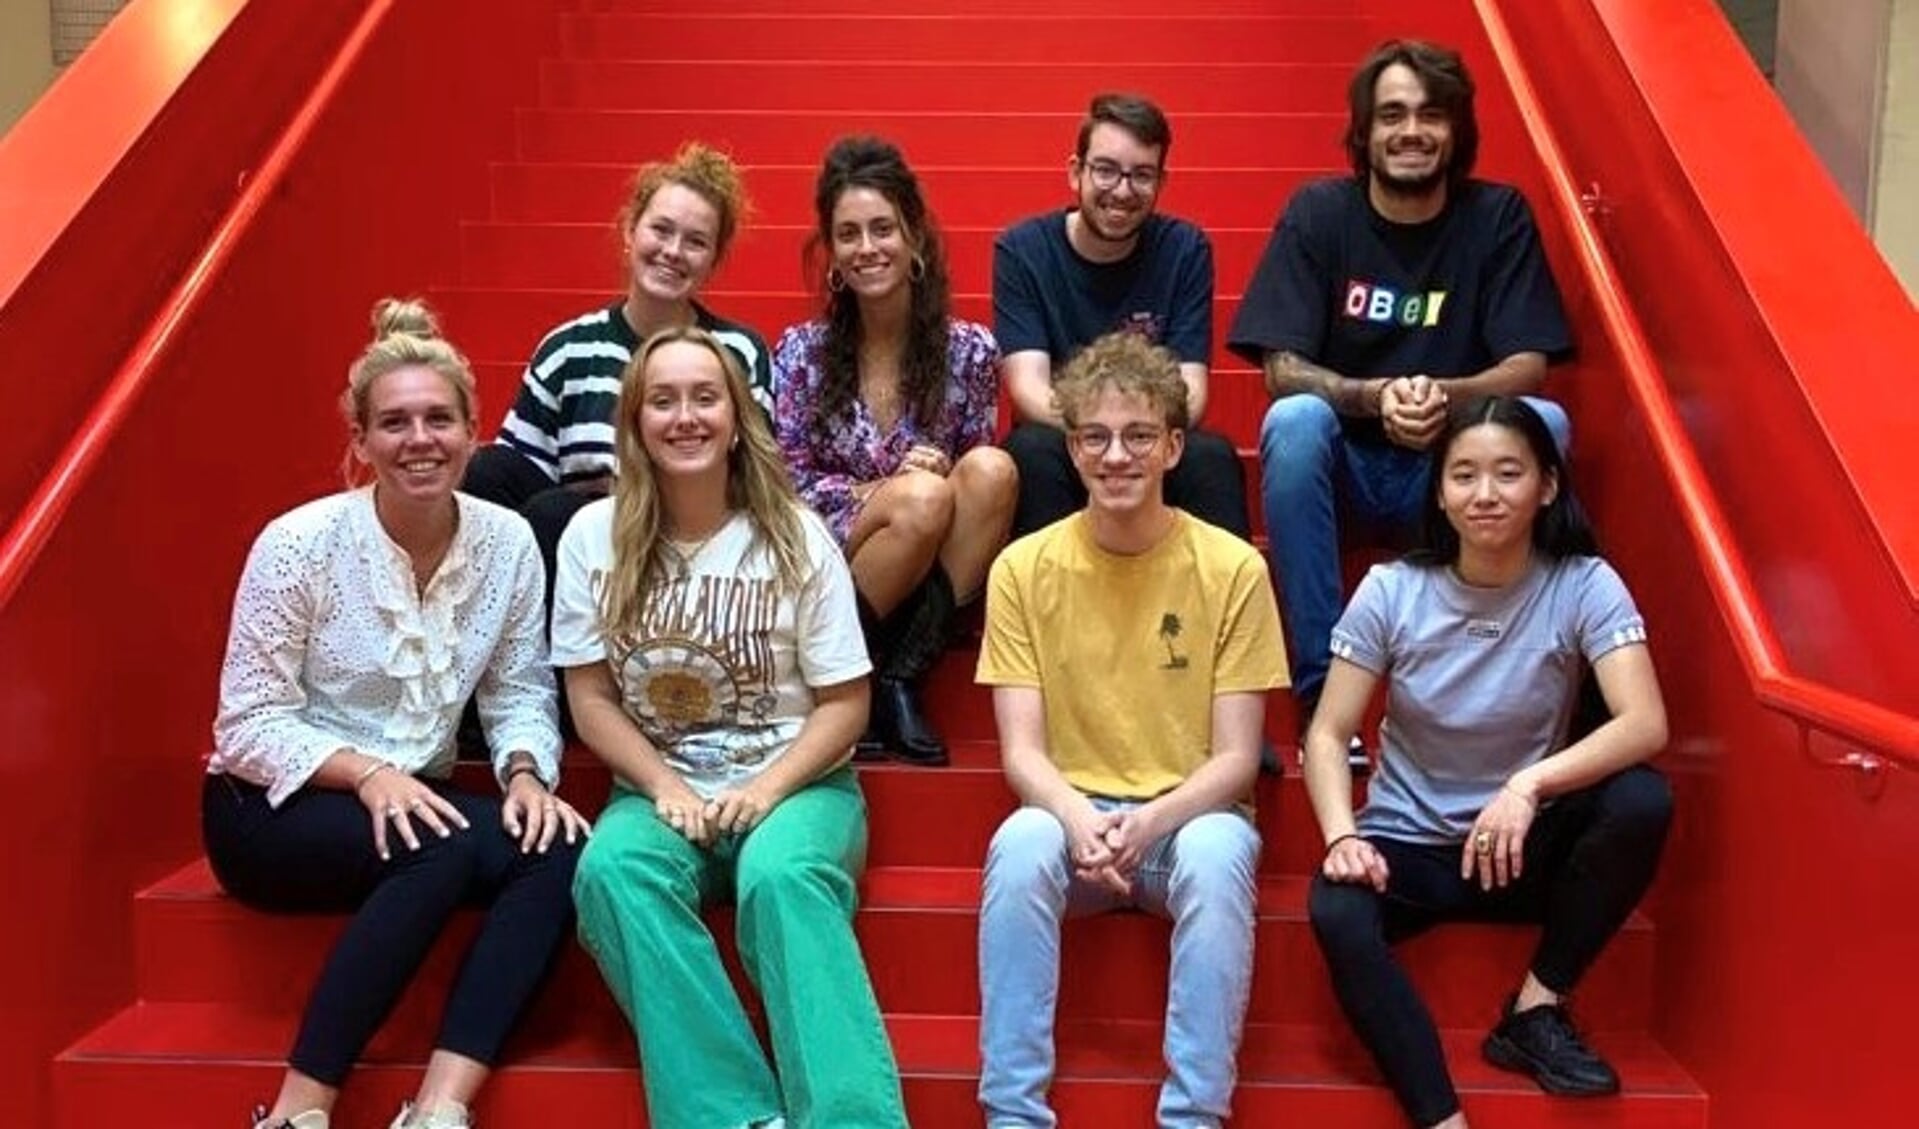 Acht studenten van de Hogeschool Leiden, waaronder de Voorschotense Galatia Mari (midden achter) organiseren een (online) evenement 